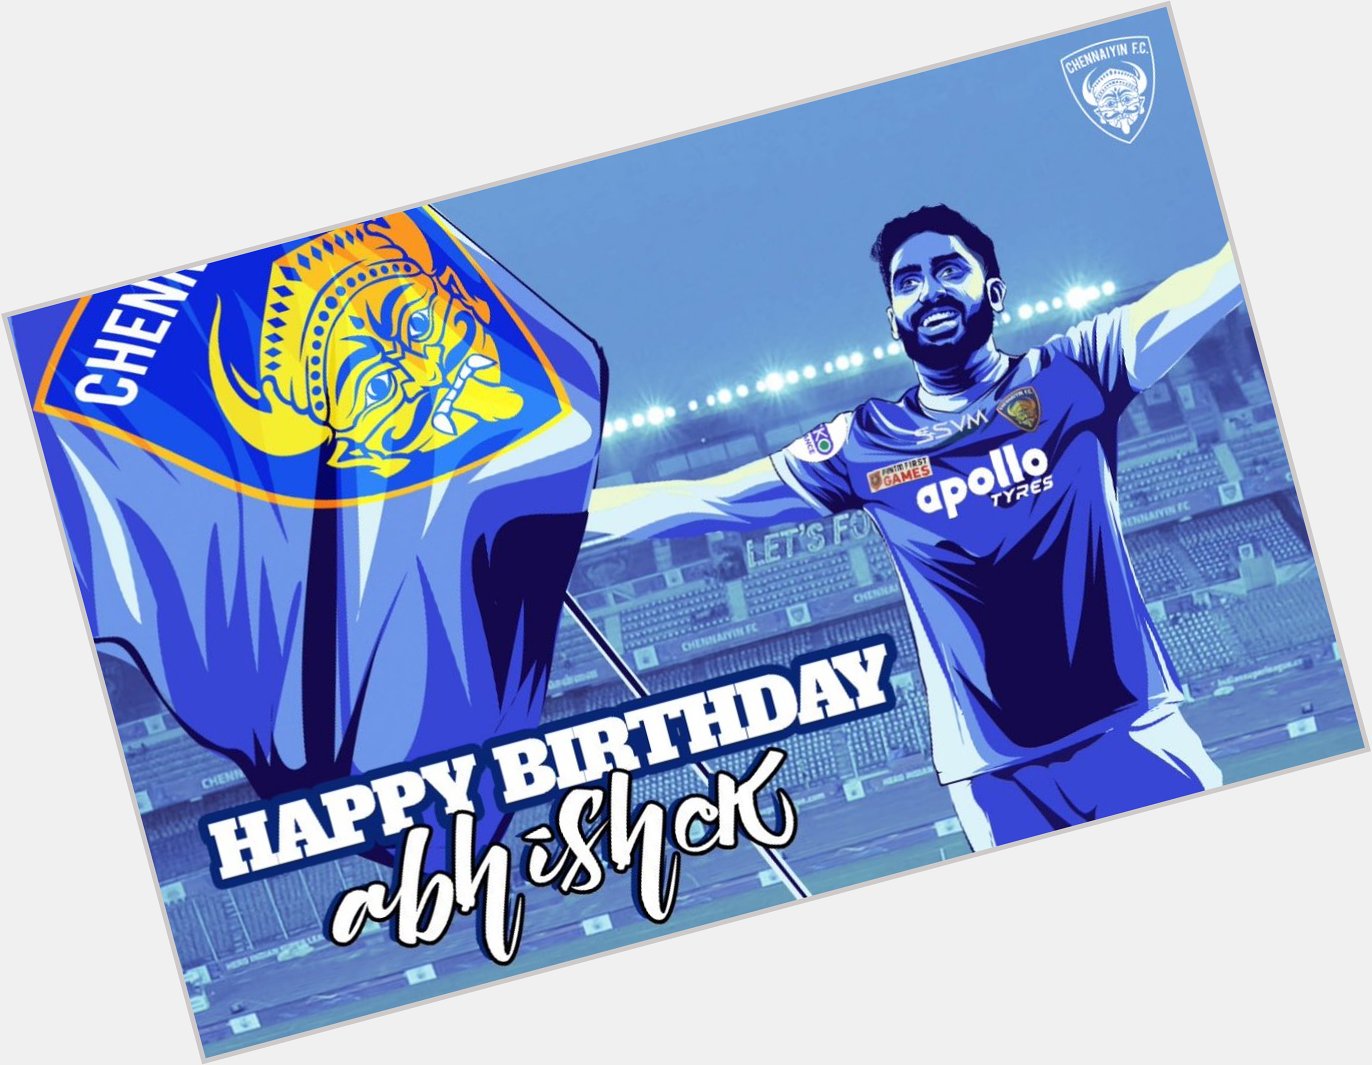 Happy birthday Abhishek Bachchan 